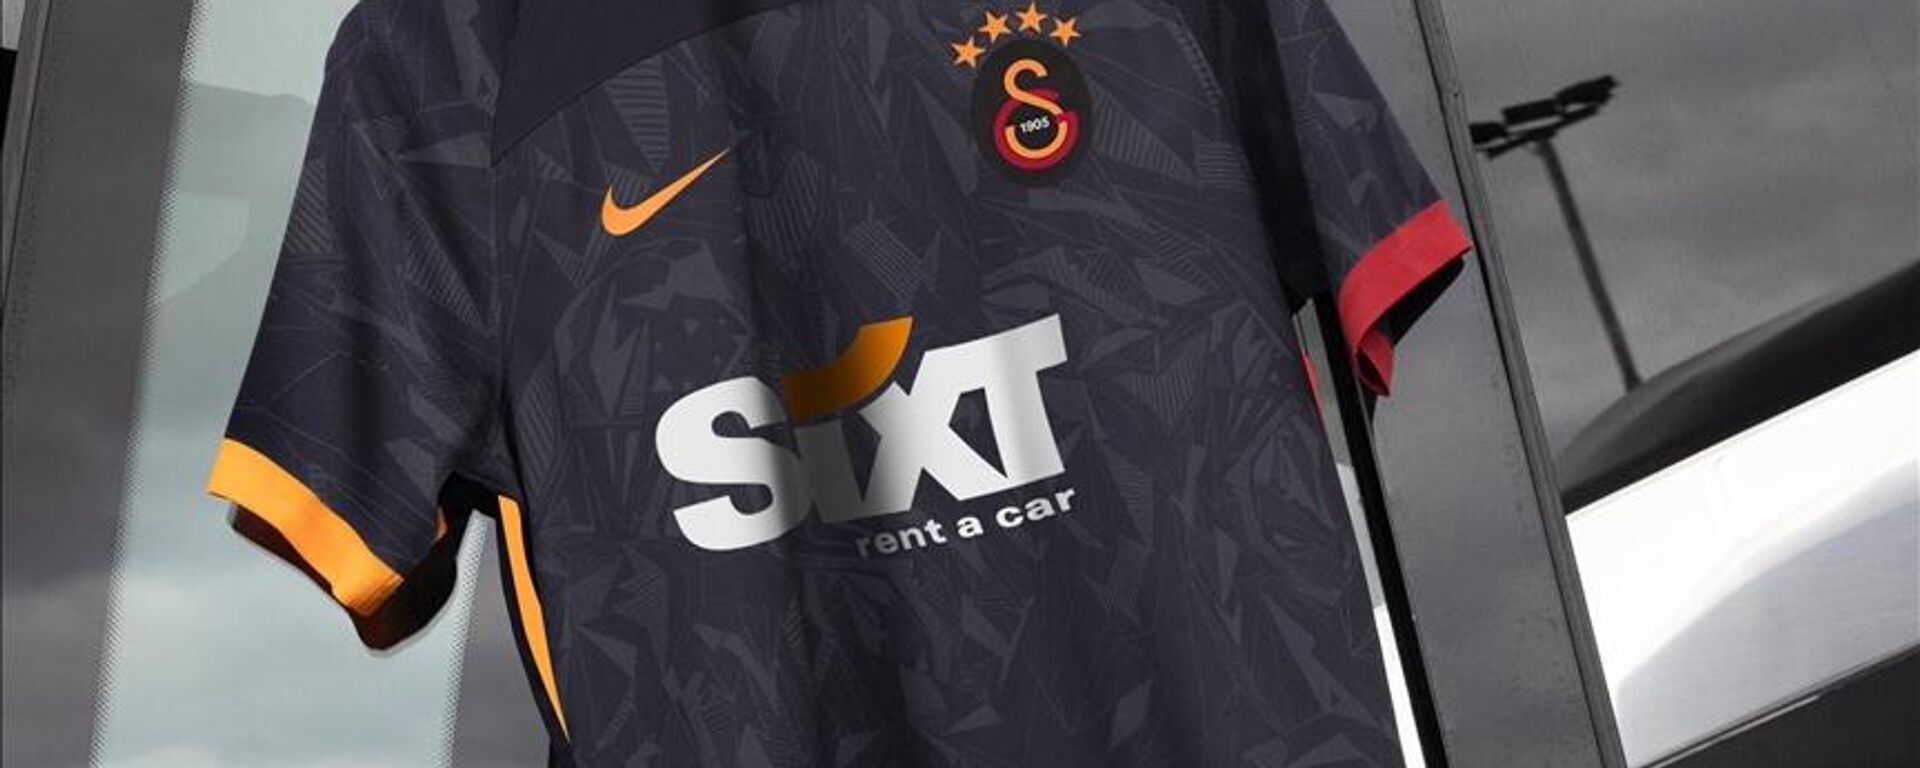 Galatasaray Futbol Takımı'nın yeni sezonda giyeceği formaların tanıtımı yapıldı. - Sputnik Türkiye, 1920, 13.08.2022